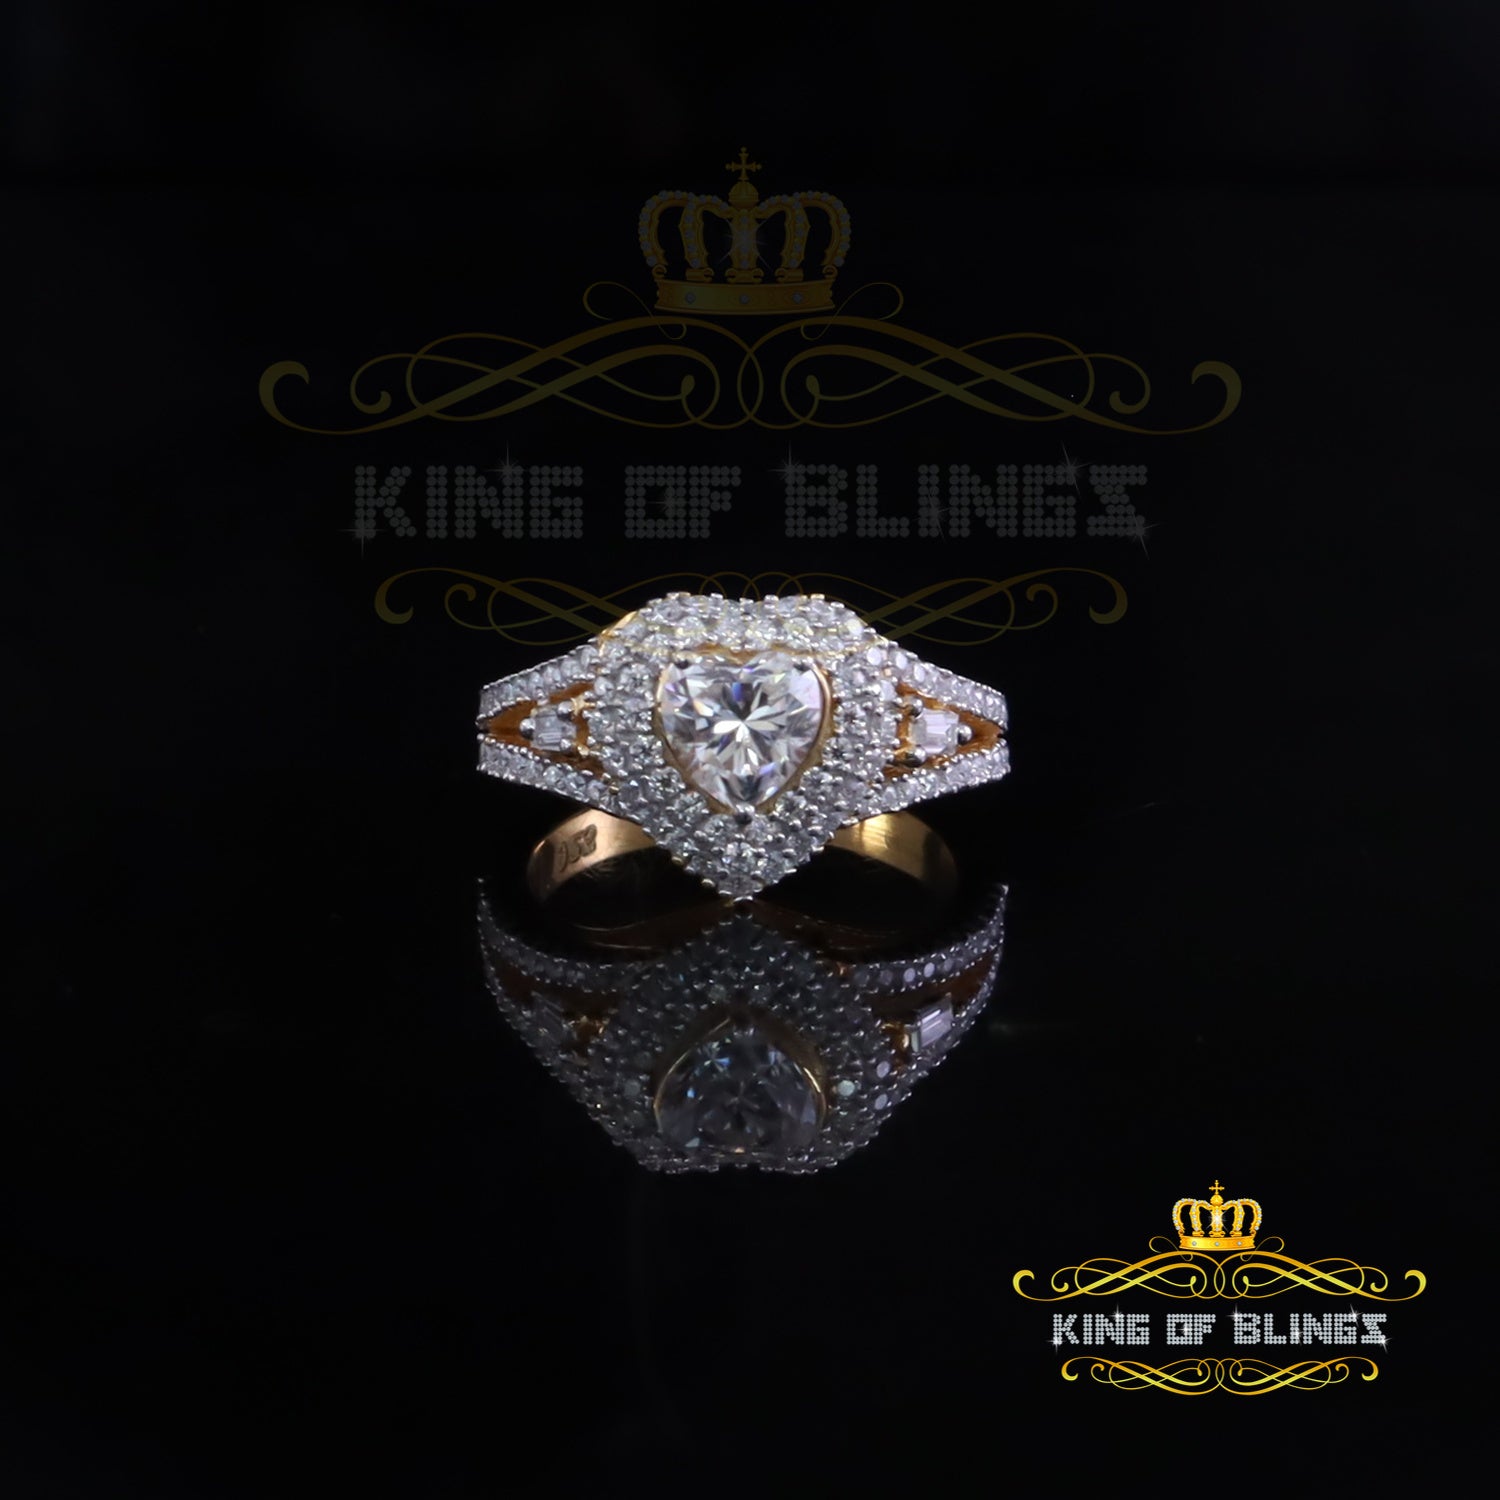 King of Bling's Heart Ring Sz 7 for Women 925 Yellow Silver 1.50ct VVS D HEART Moissanite stone King of Blings